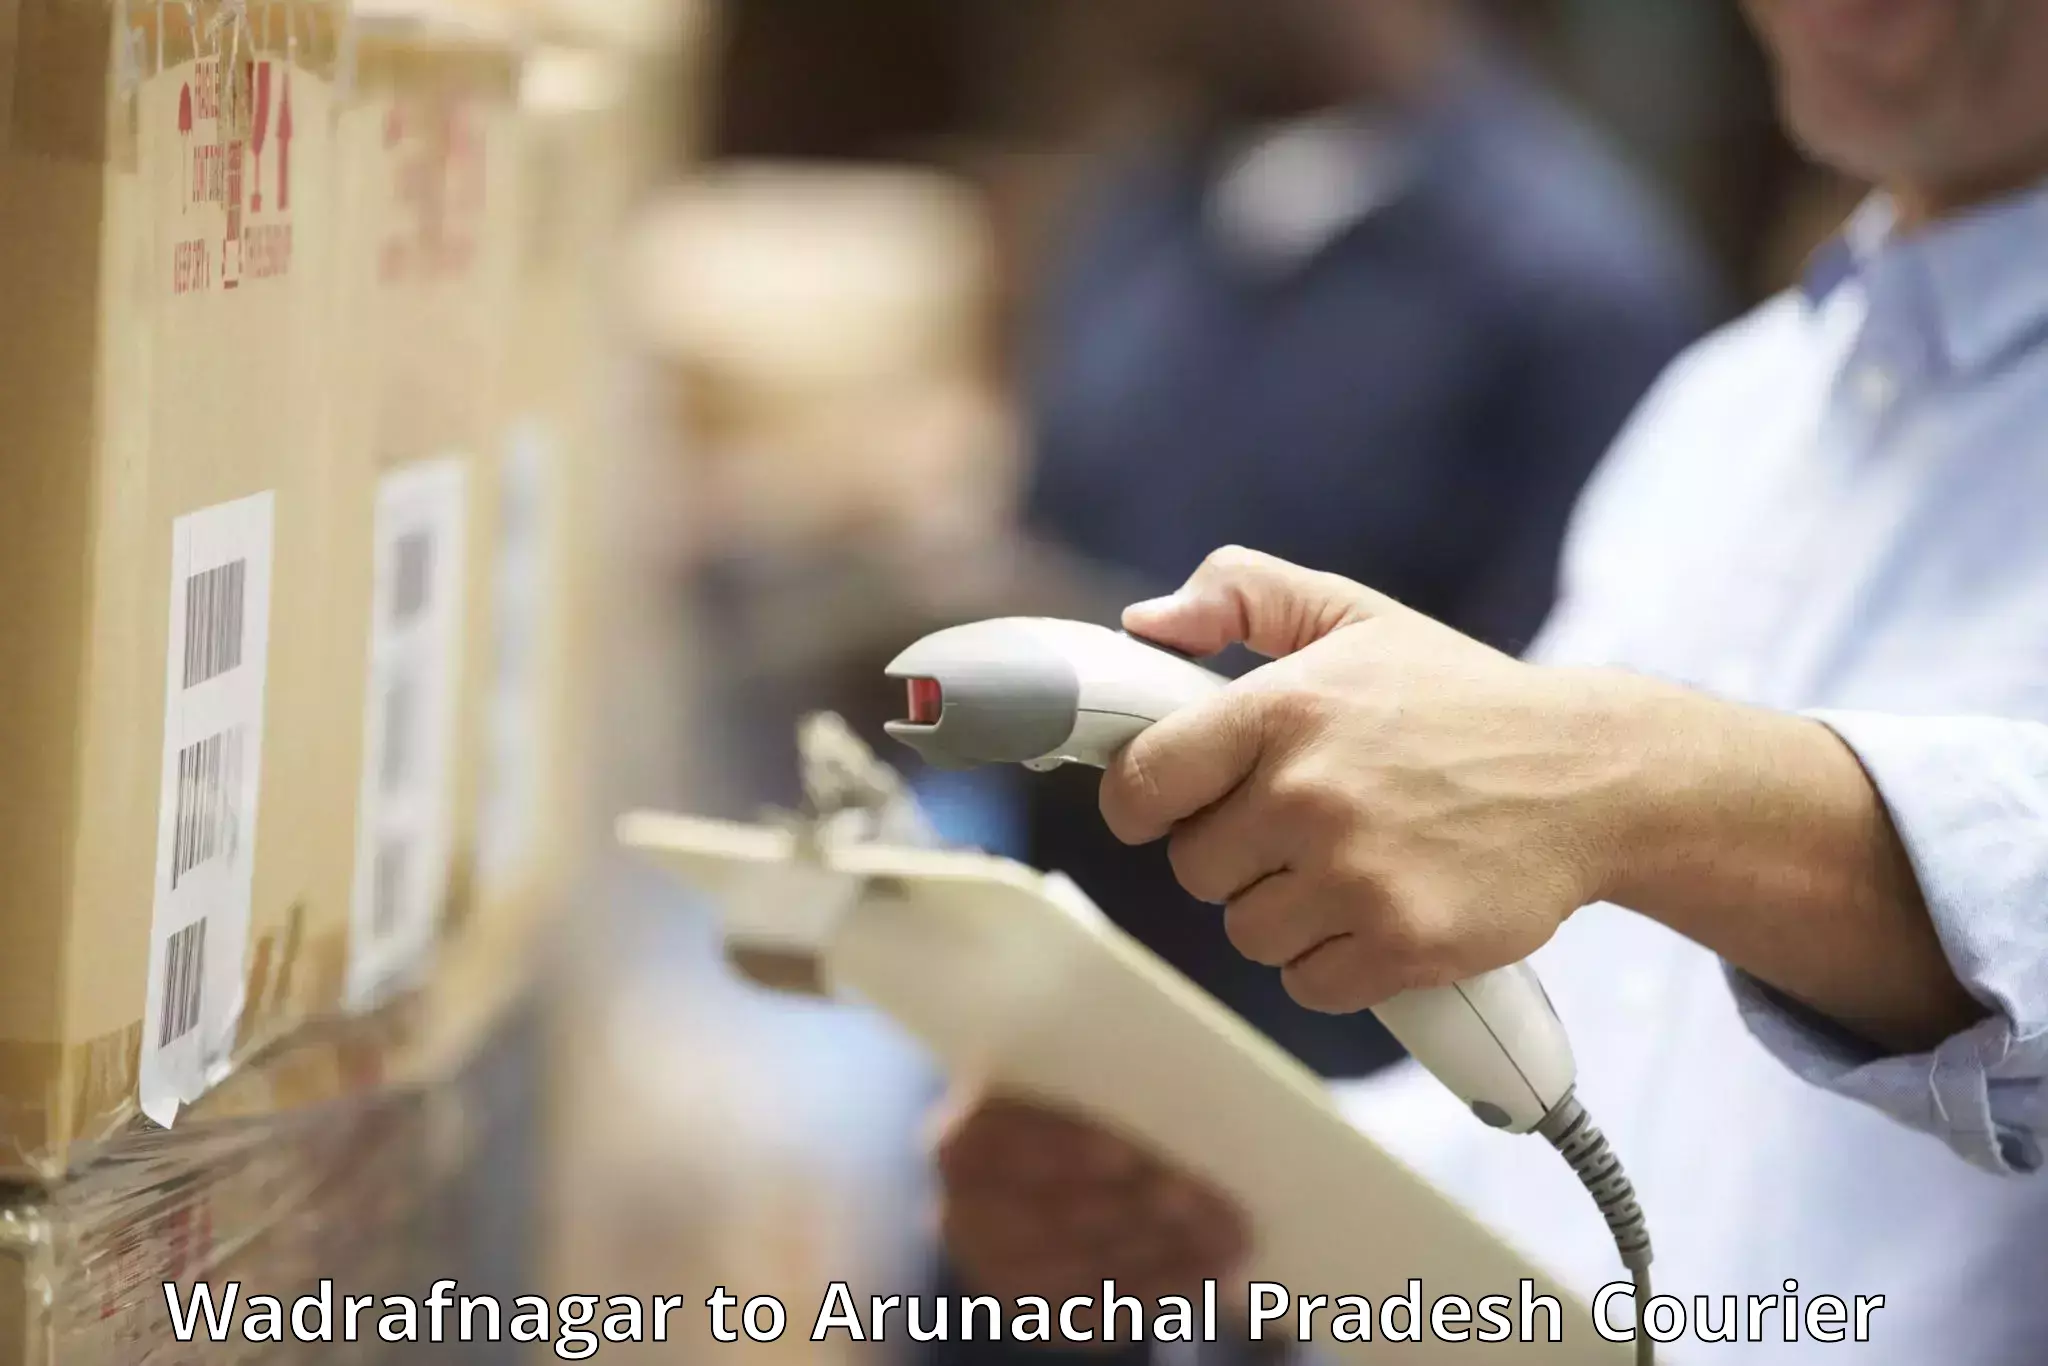 Baggage courier operations Wadrafnagar to Arunachal Pradesh